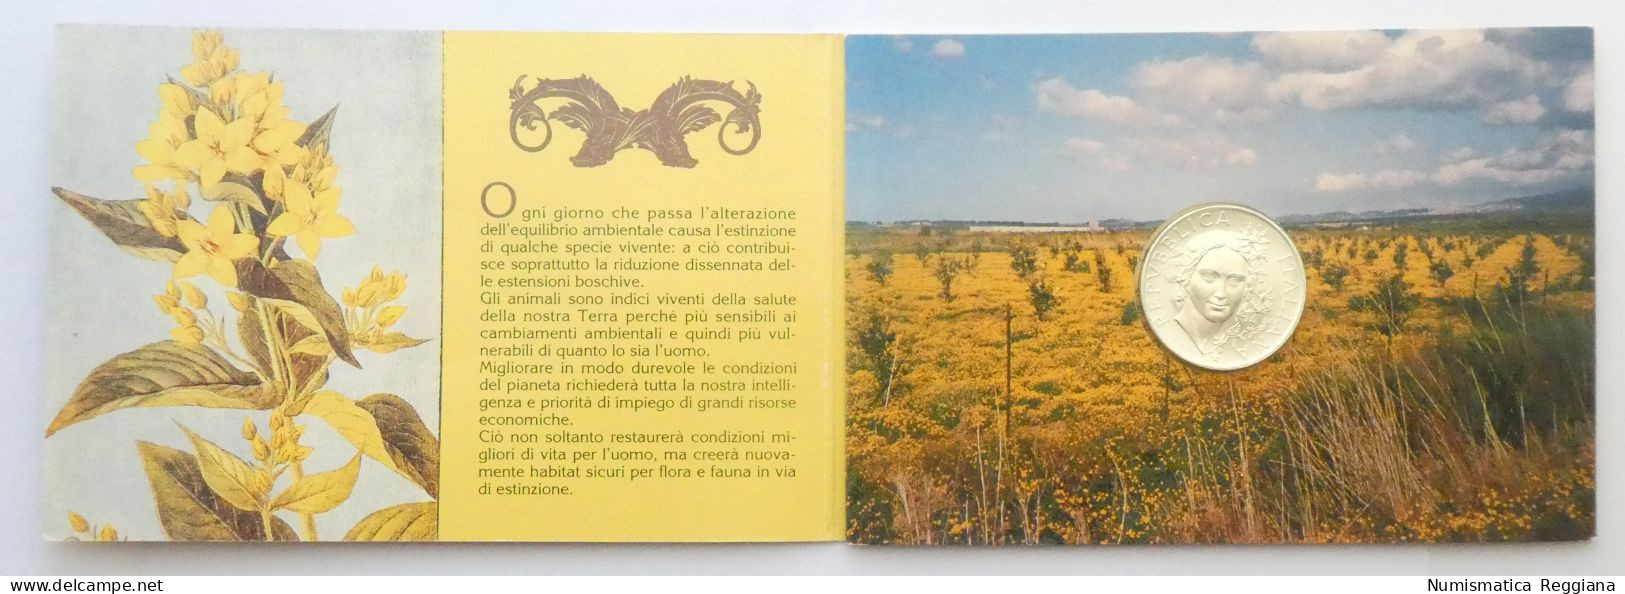 Repubblica Italiana - 500 Lire 1993 FDC Flora E Fauna Da Salvare - Jahressets & Polierte Platten